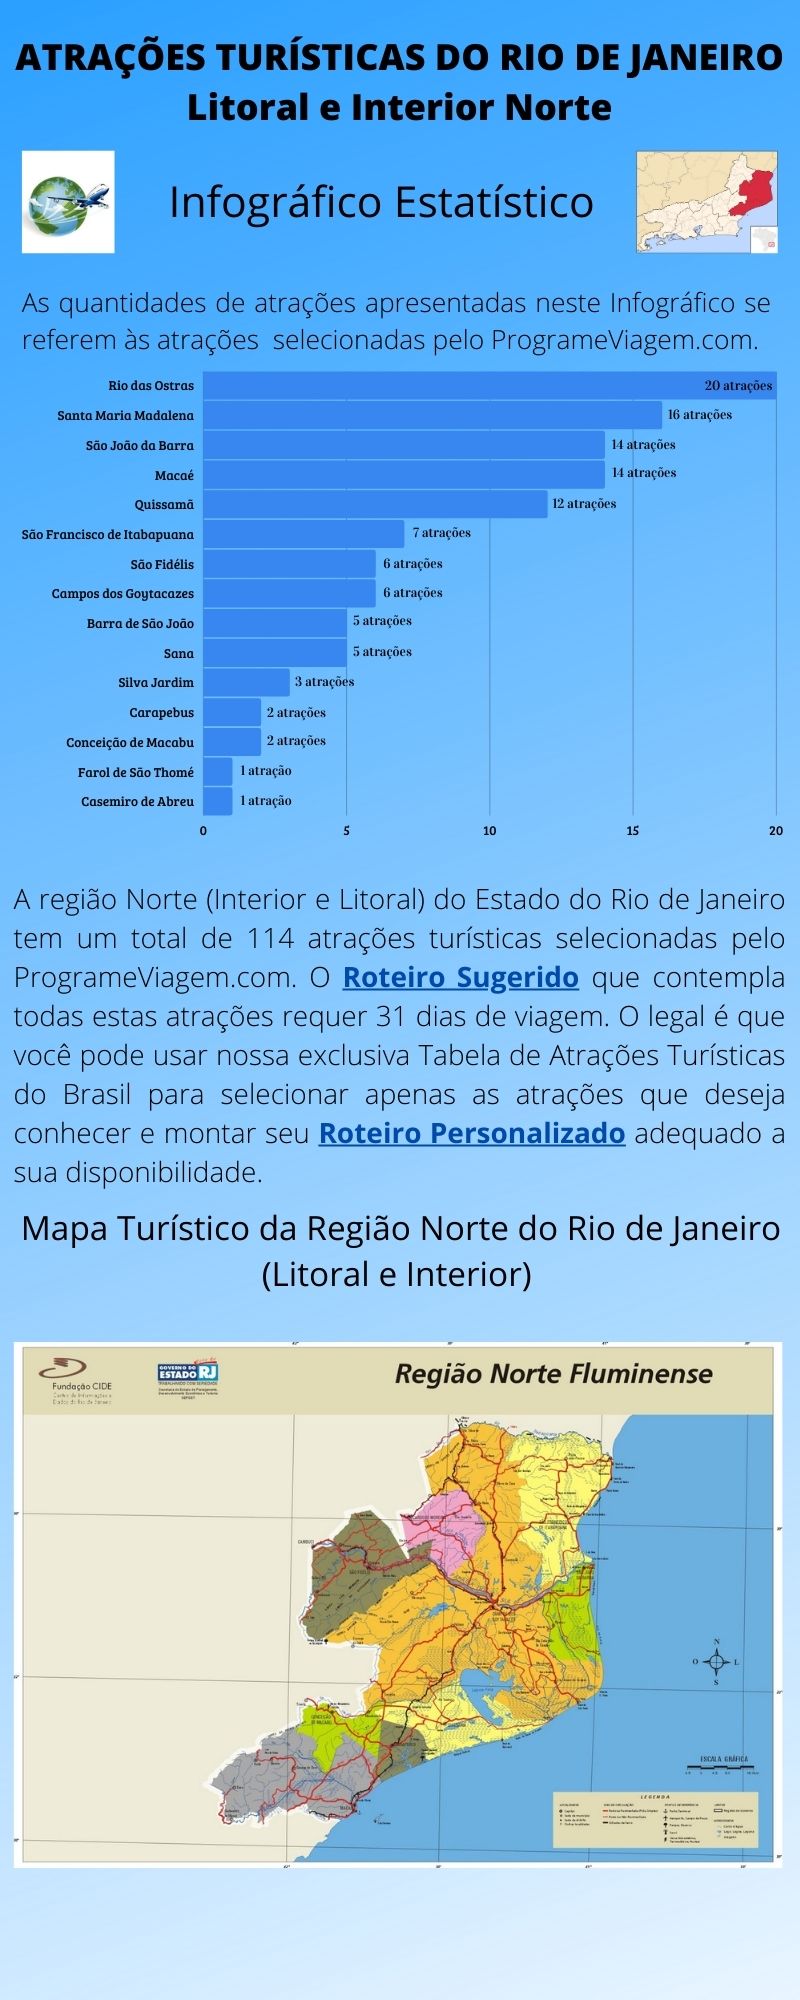 Infográfico Atrações Turísticas do Rio de Janeiro (Litoral e Interior Norte)